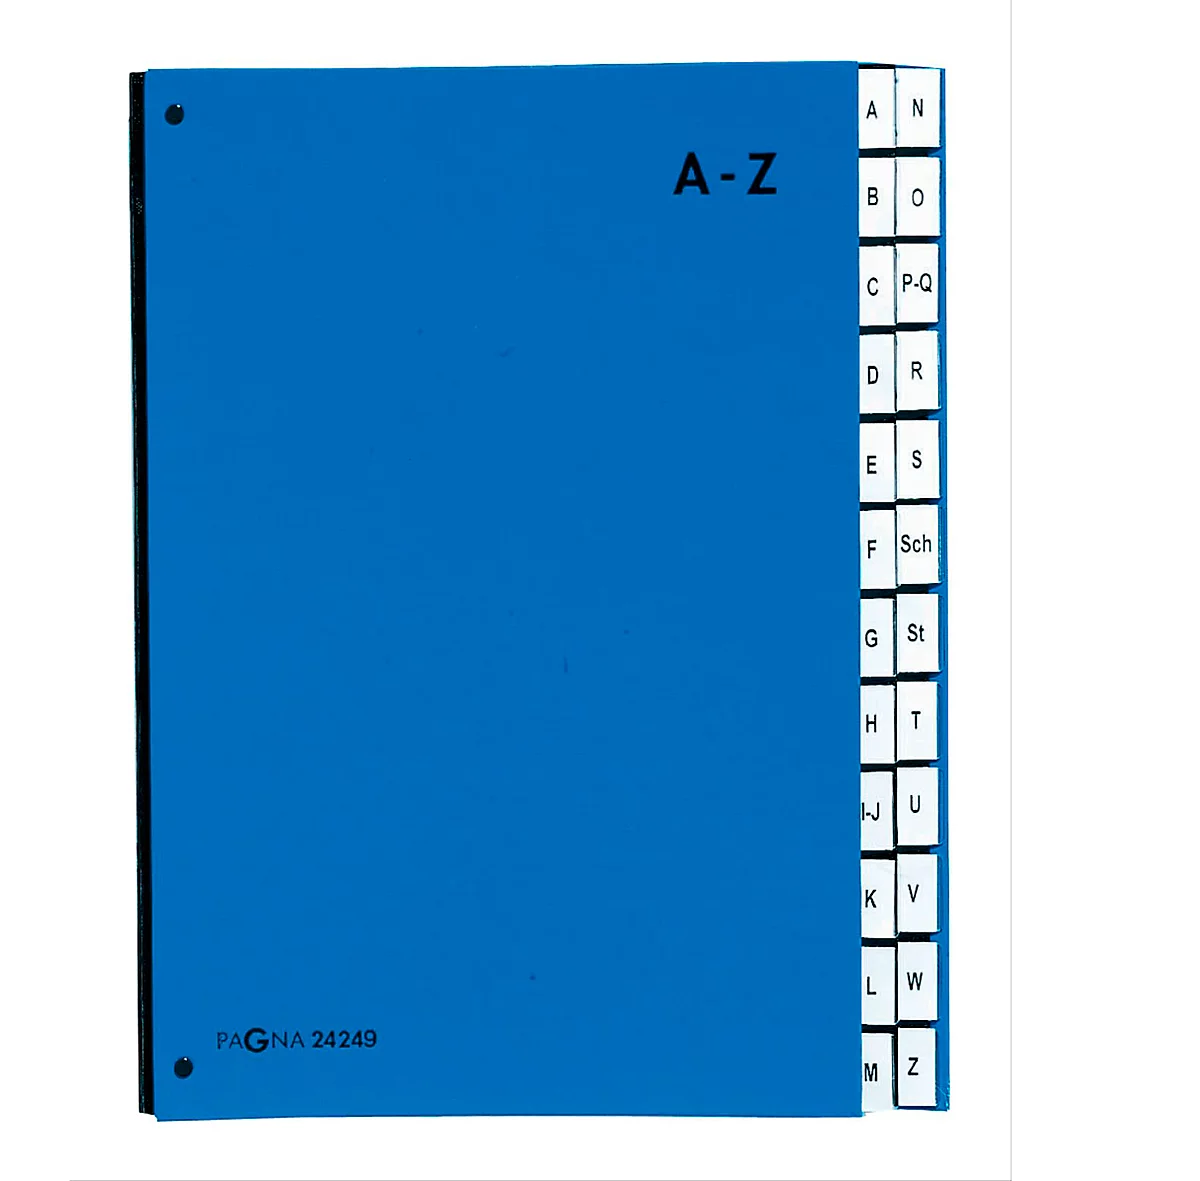 PAGNA Pultordner Color A - Z, auch für Überformate, Polypropylen, blau